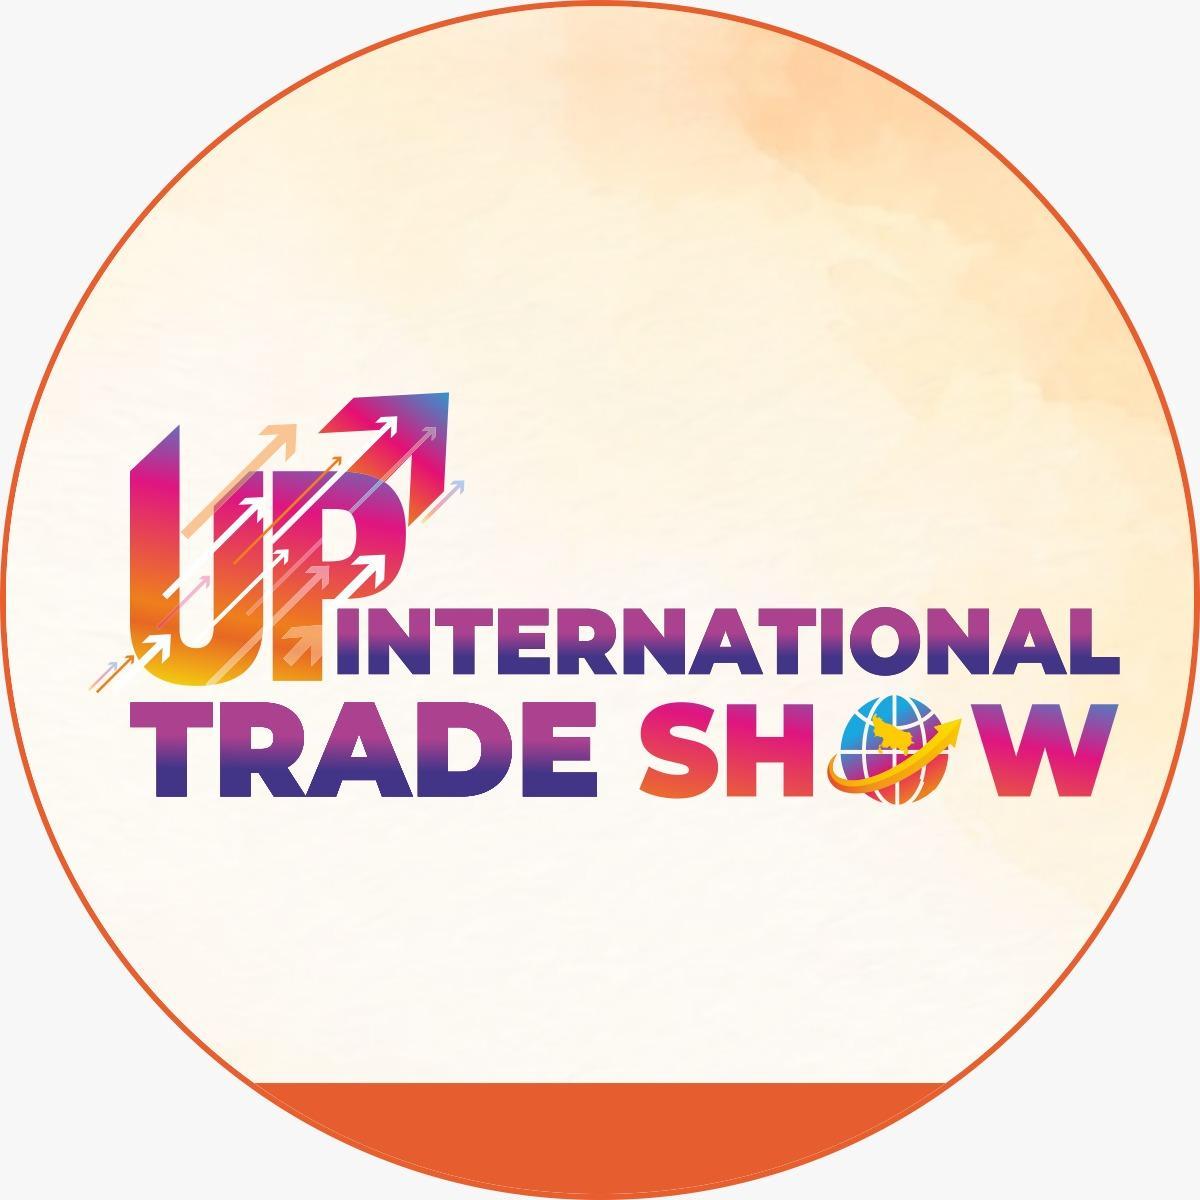 Uttar Pradesh International Trade Show